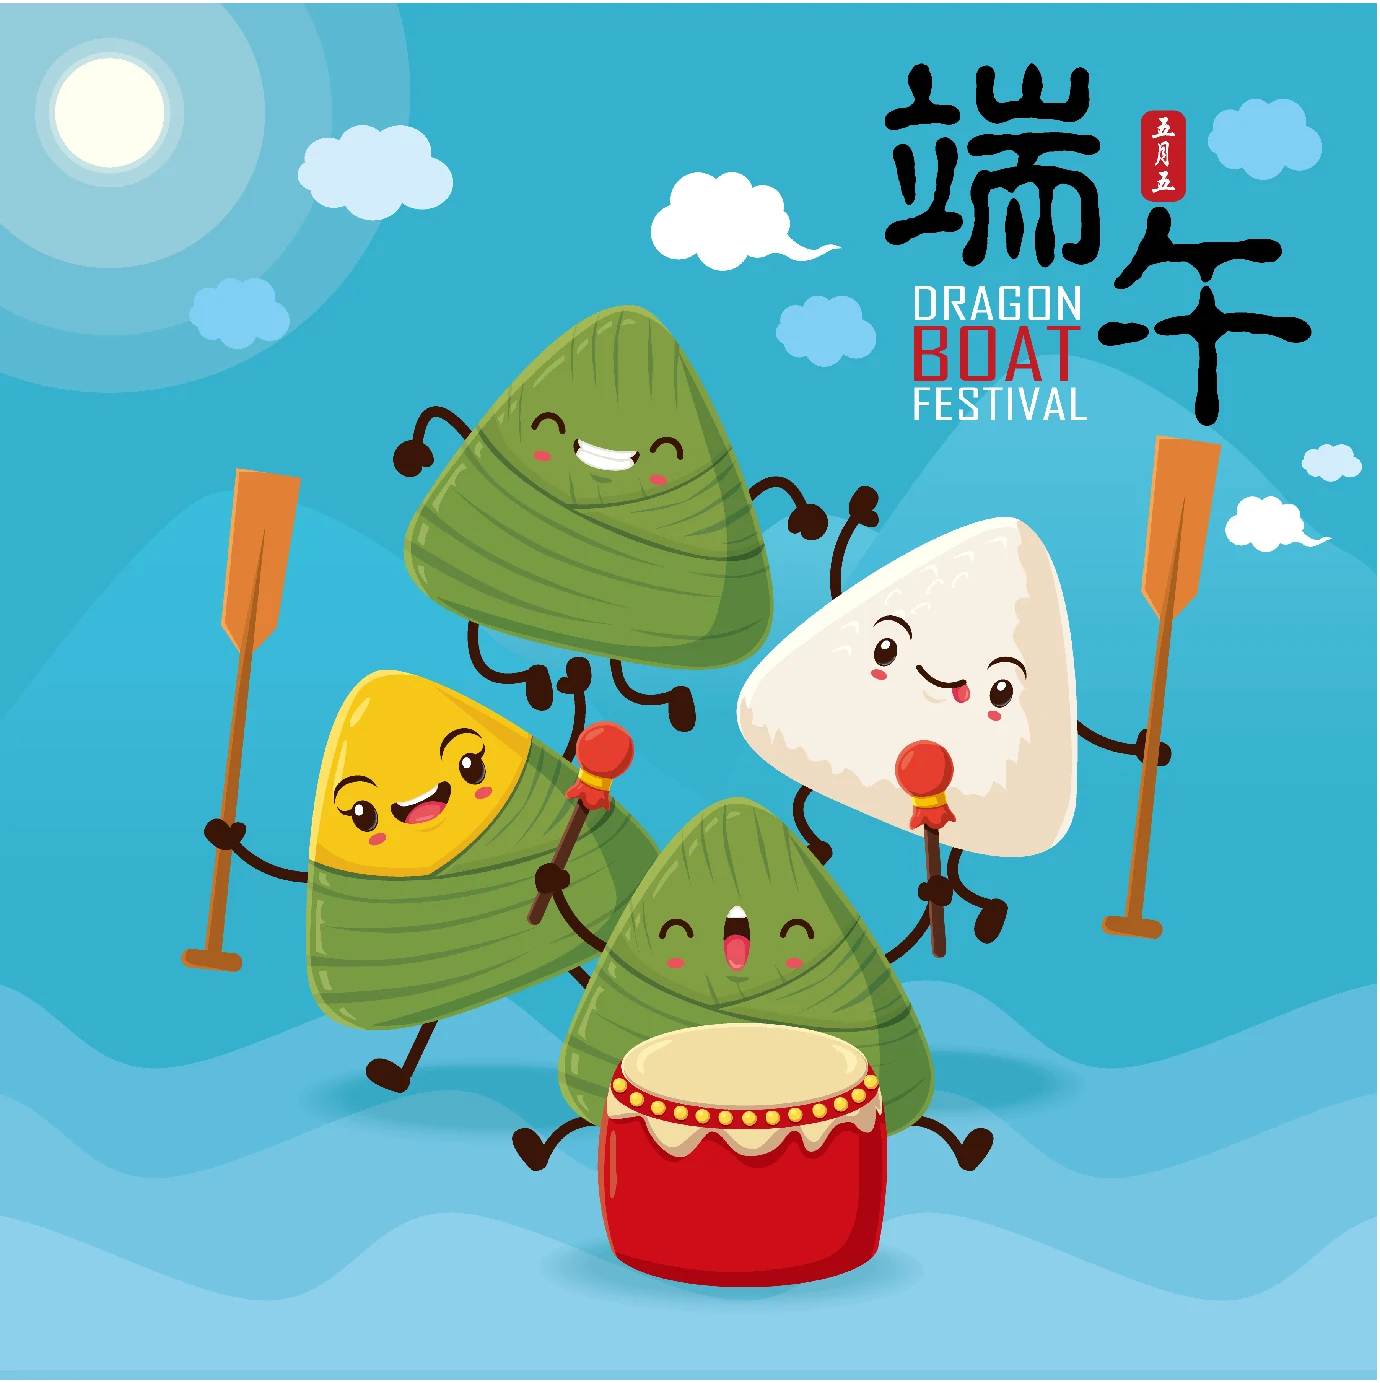 中国传统节日卡通手绘端午节赛龙舟粽子插画海报AI矢量设计素材【011】